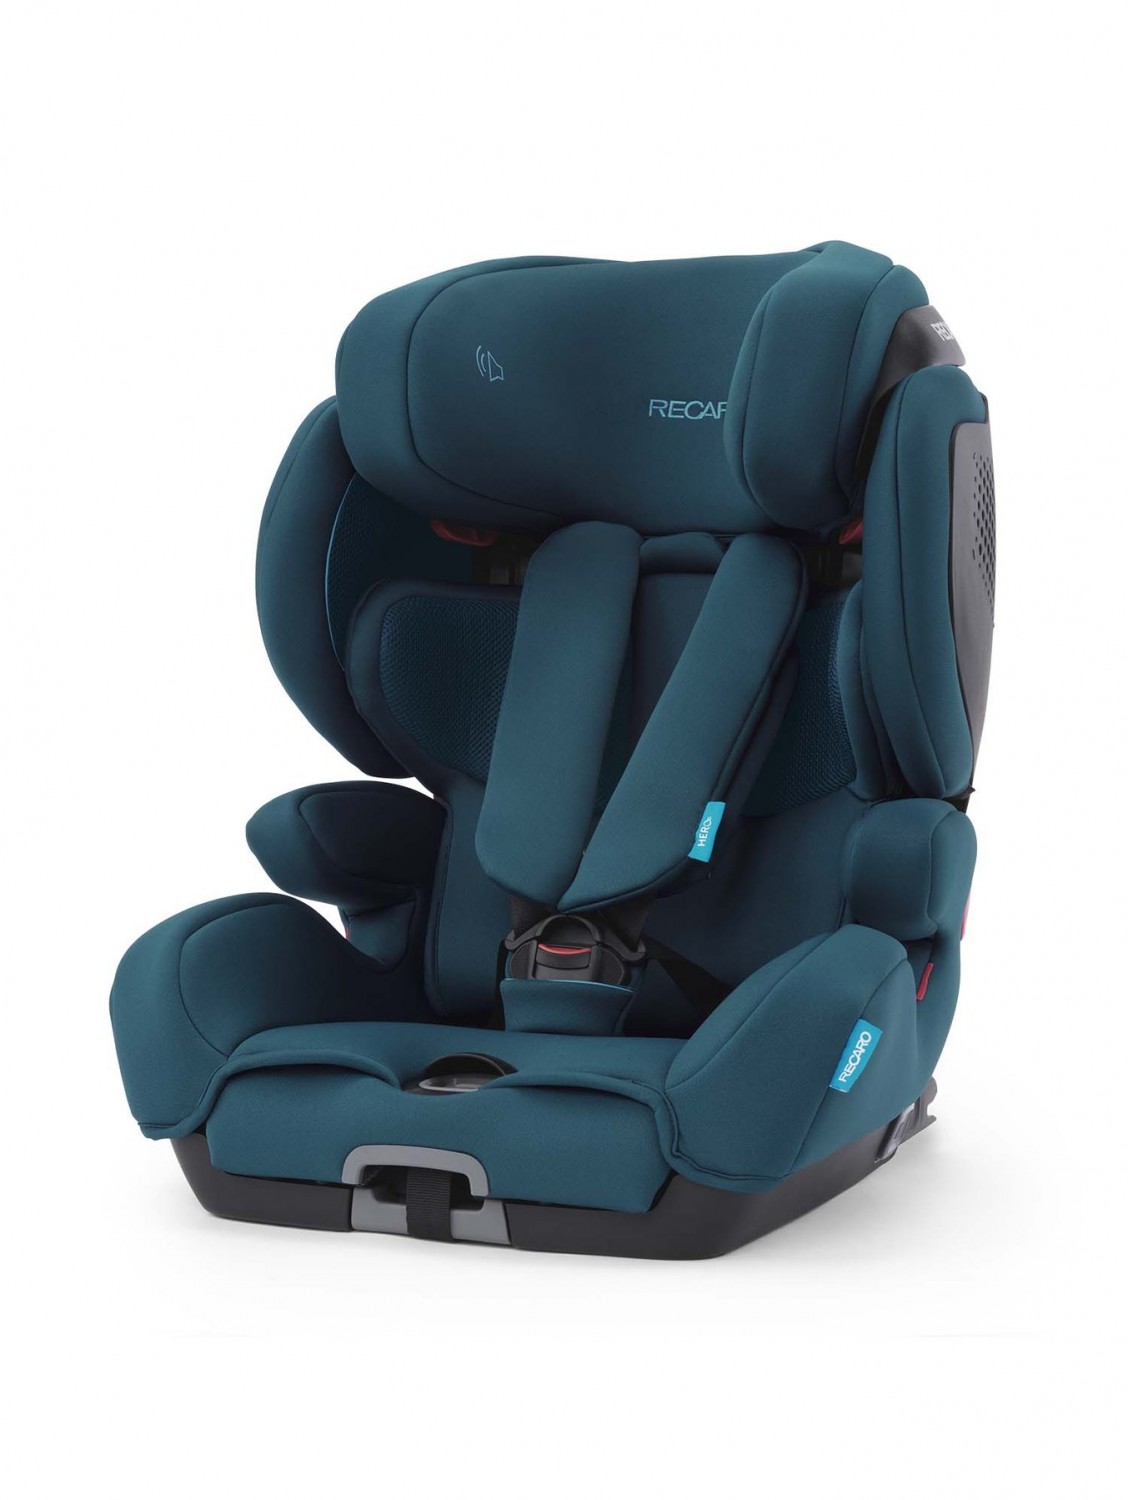 car-seat-tian-elite-select-teal-green-1_5435c956-7cea-4692-b6fa-ff6fd110519e_1800x1800